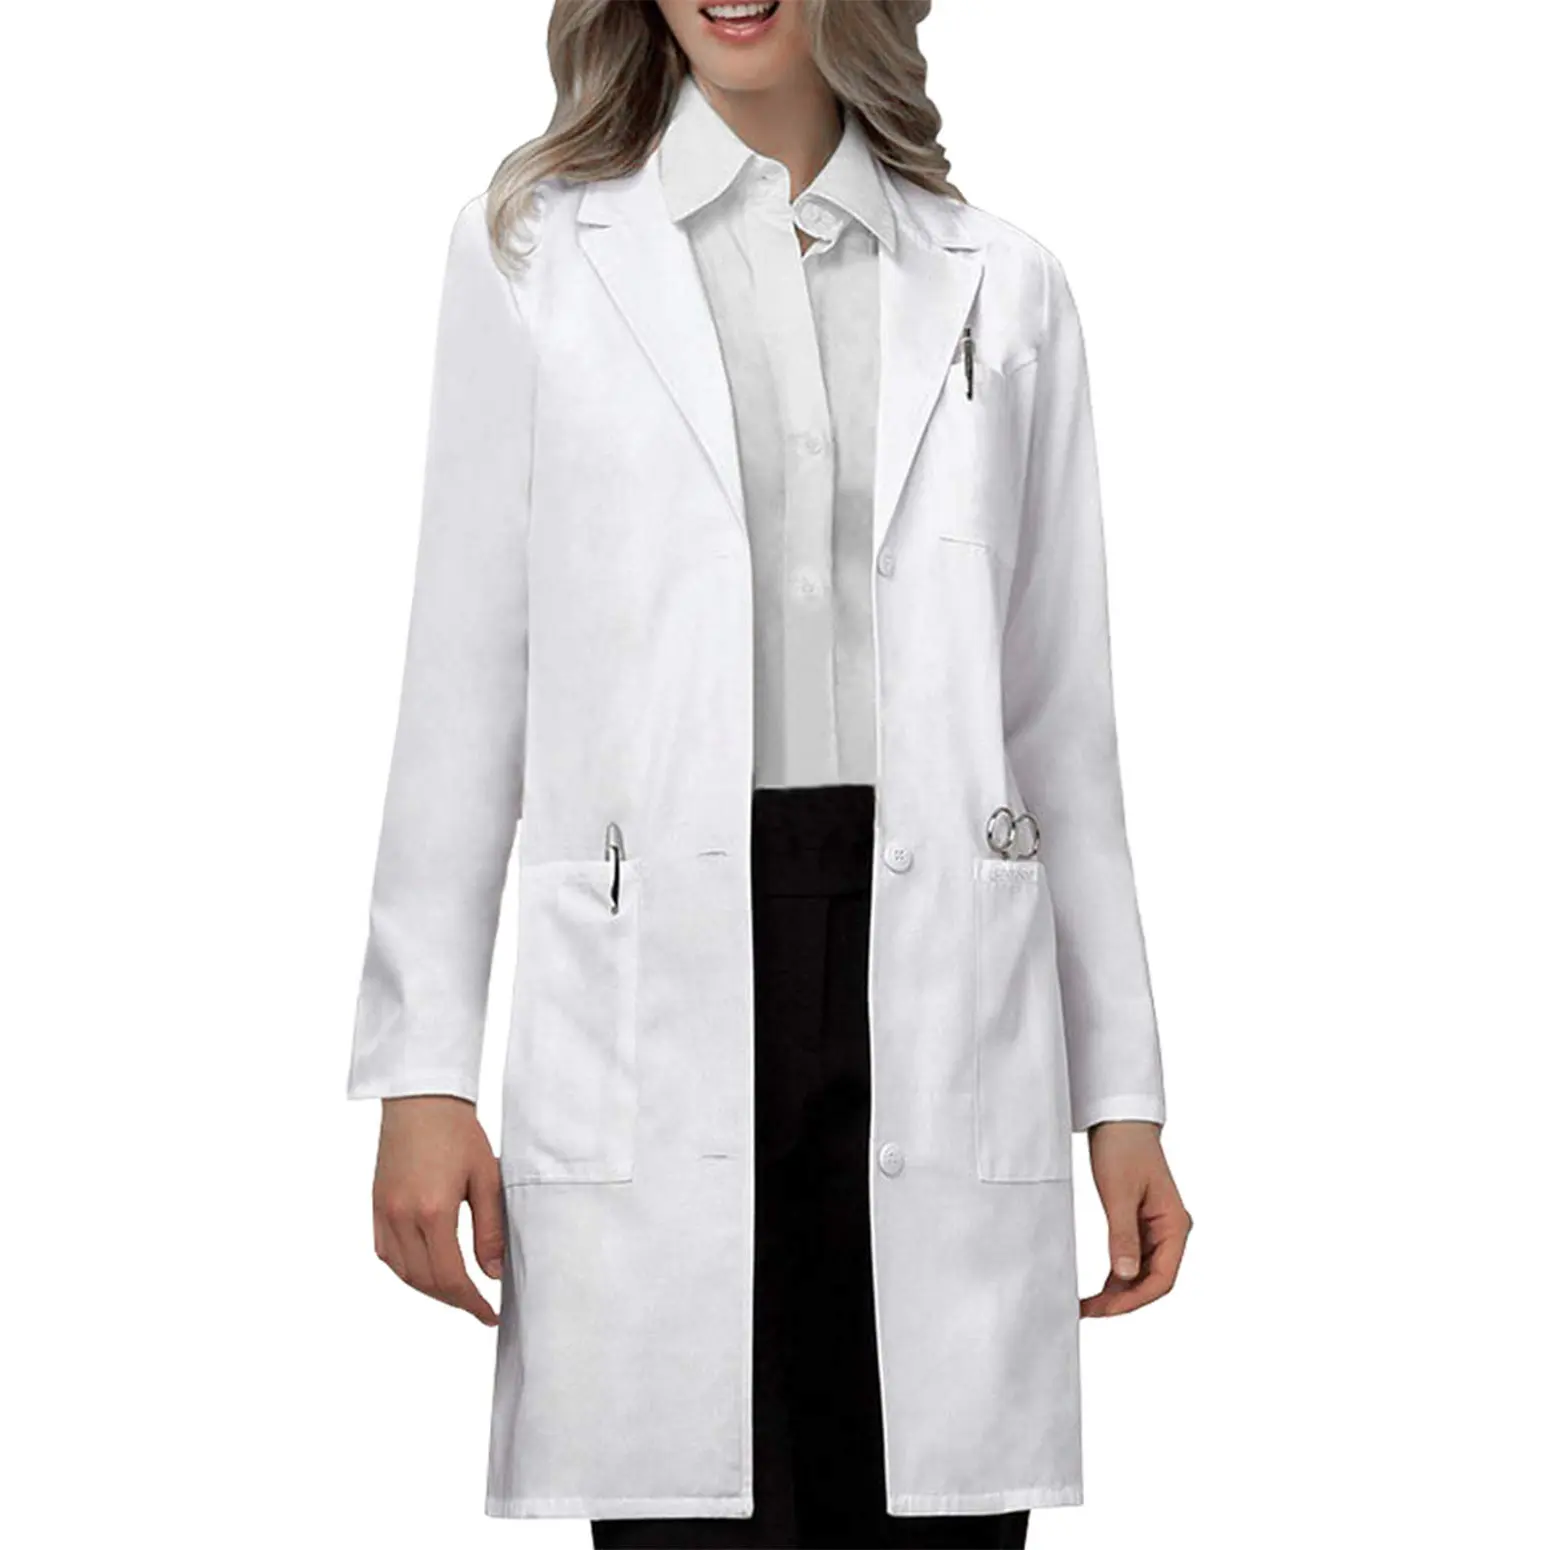 Profession eller Labor kittel für Frauen Männer Langarm Weiß Unisex Krankenhaus Tierklinik Arzt Krankens ch wester tragen Uniform Medizinische Uniform